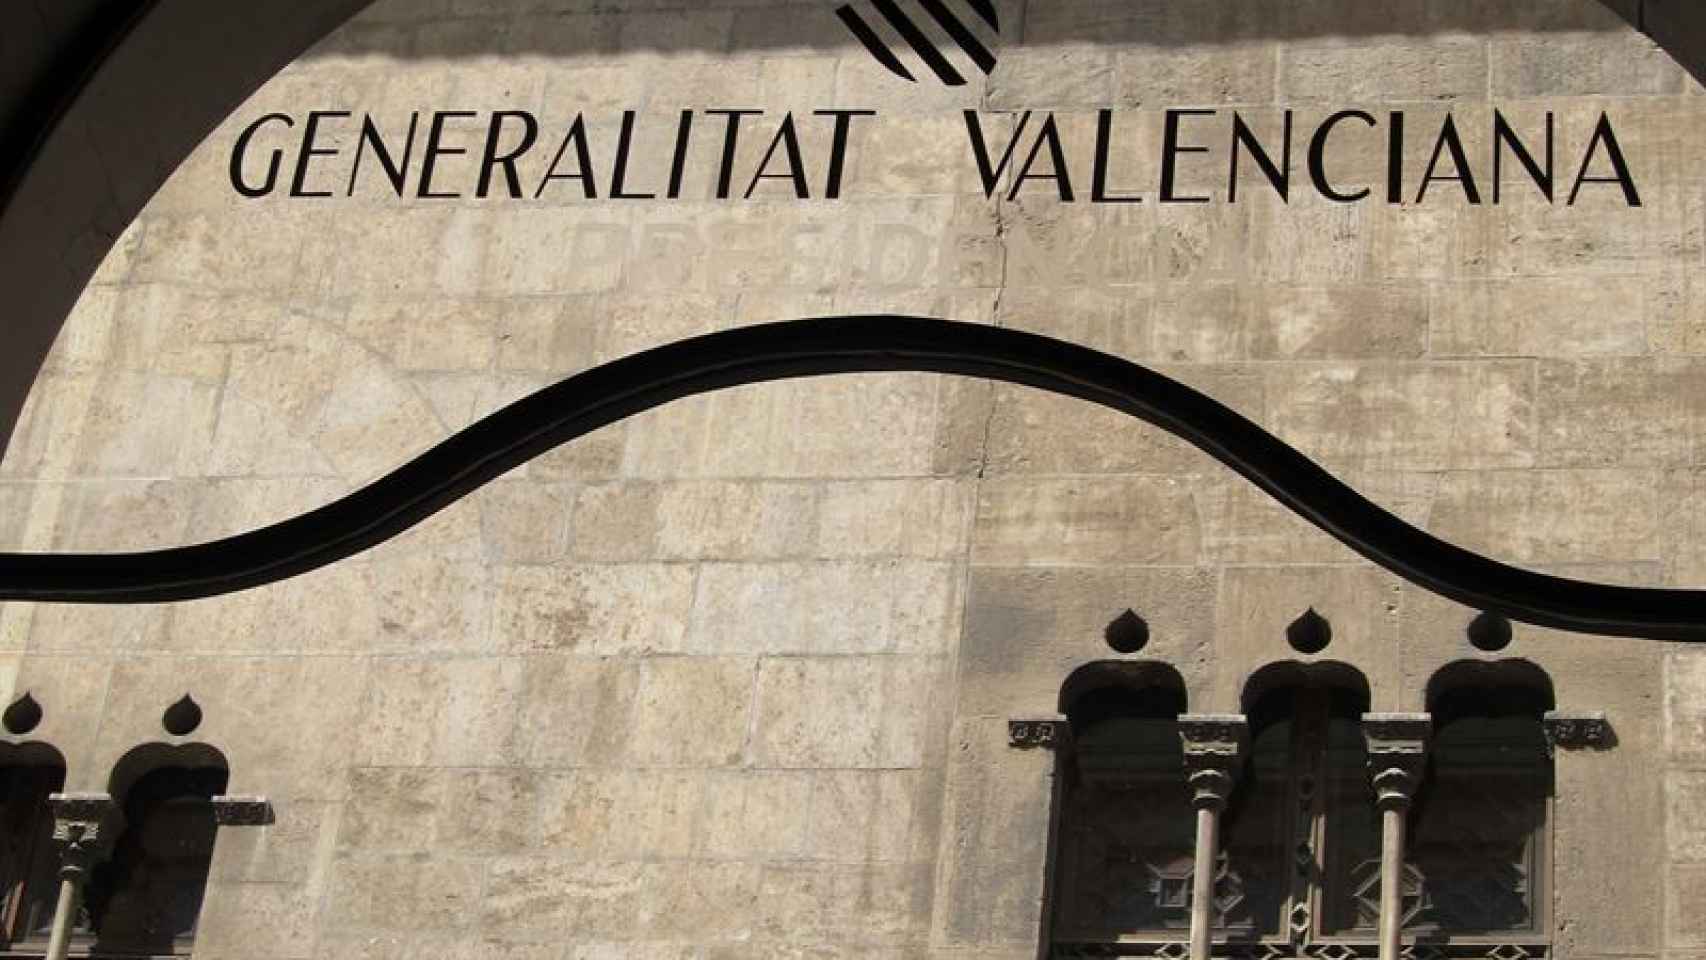 La Generalitat Valenciana aflora pérdidas de más de 3.000 millones